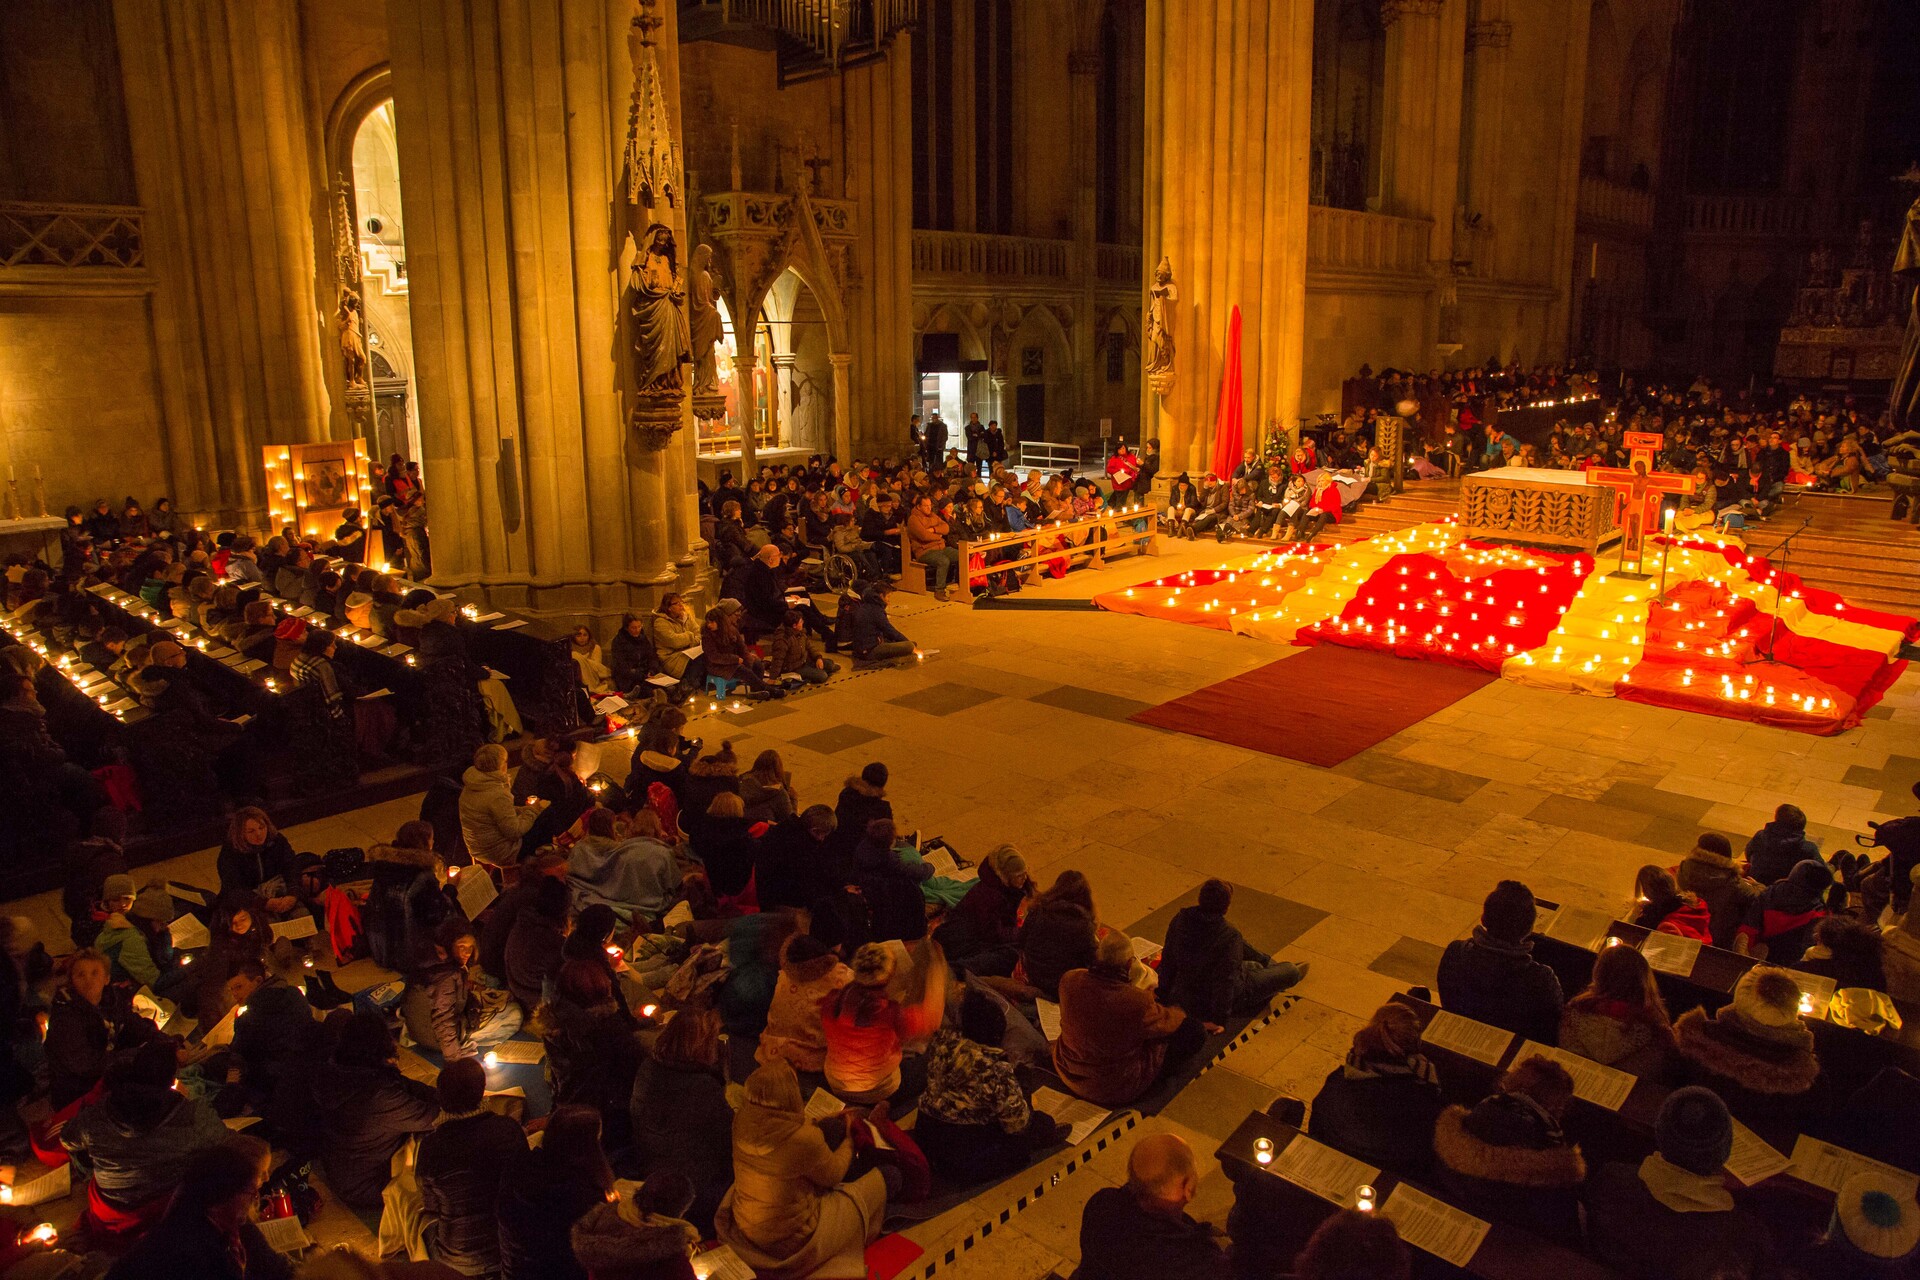 Veranstaltet wird die Nacht der Lichter in ökumenischer Zusammenarbeit des BDKJ Diözesanverband Regensburg und der Evangelischen Jugend im Donaudekanat Regensburg.